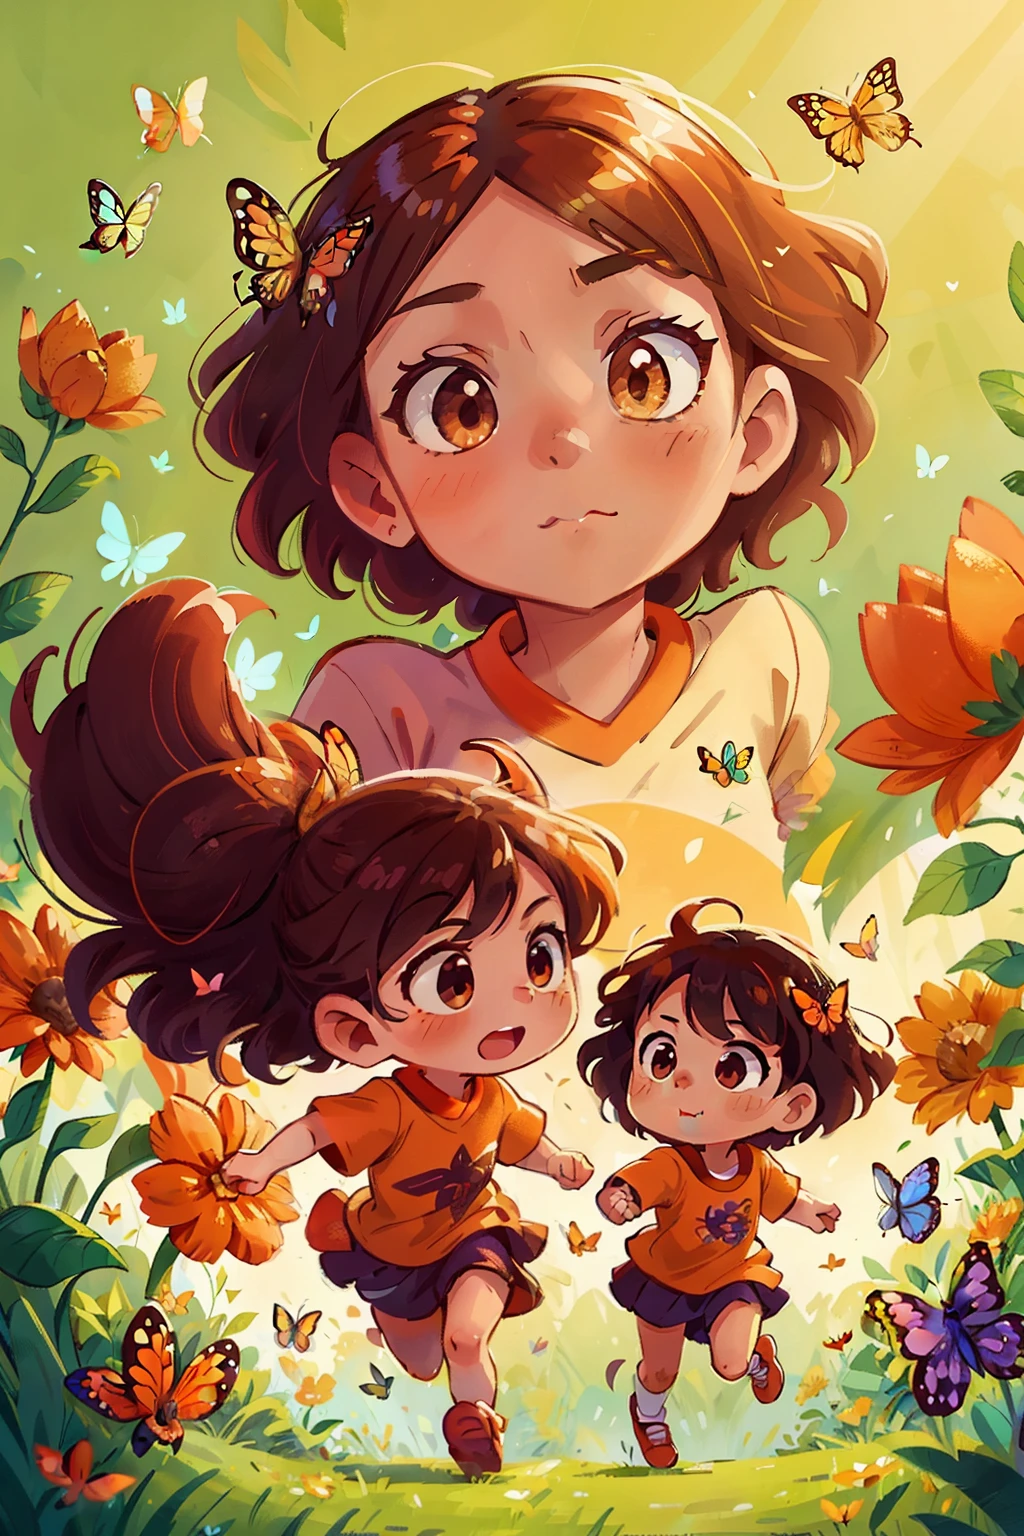 Gera uma imagem de duas meninas muito jovens correndo felizes em um campo florido, cercado por borboletas de vários tons de cor, Rosto delicado bonito com olhos laranja sedutores, afiado , vista de cima